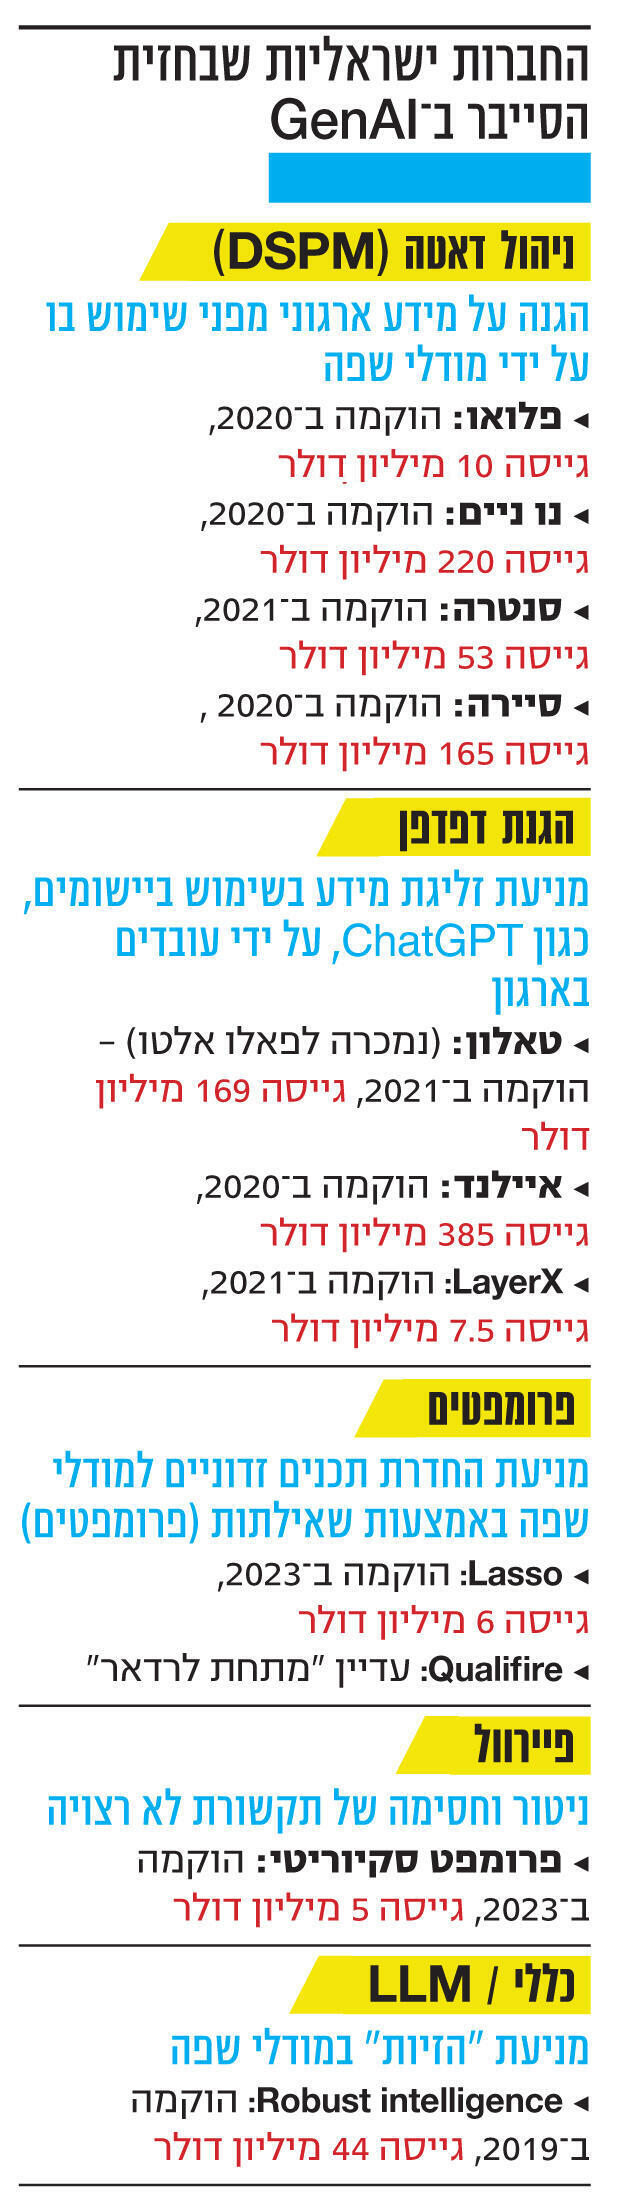 אינפו החברות ישראליות שבחזית הסייבר ב־ GenAI חדש